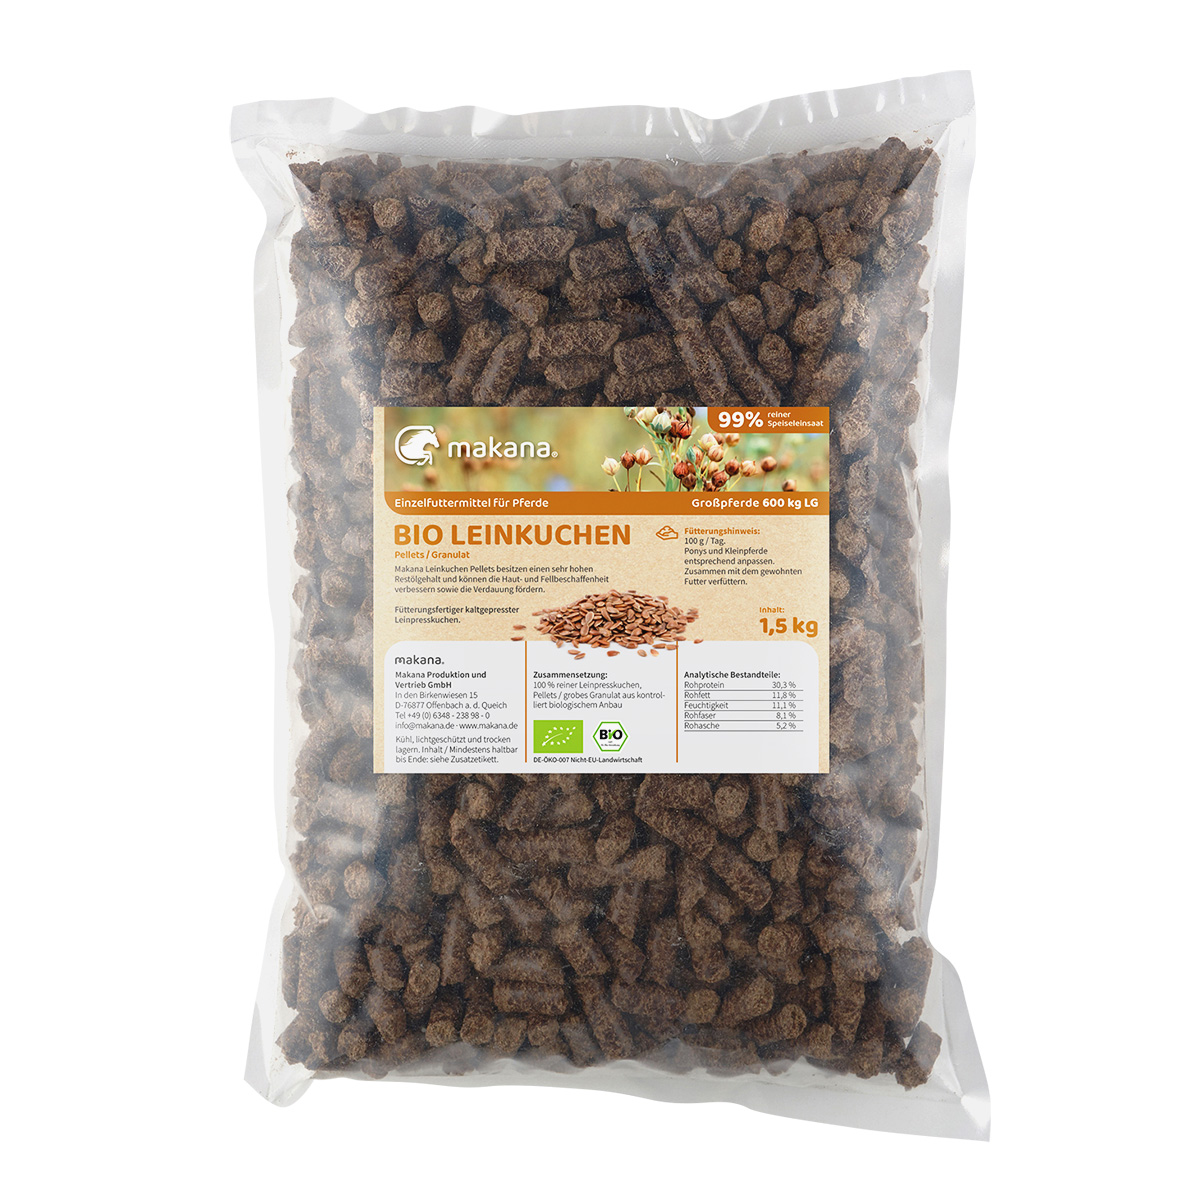 Makana BIO Leinkuchen Pellets (Granulat) für Tiere, 1,5 kg Beutel